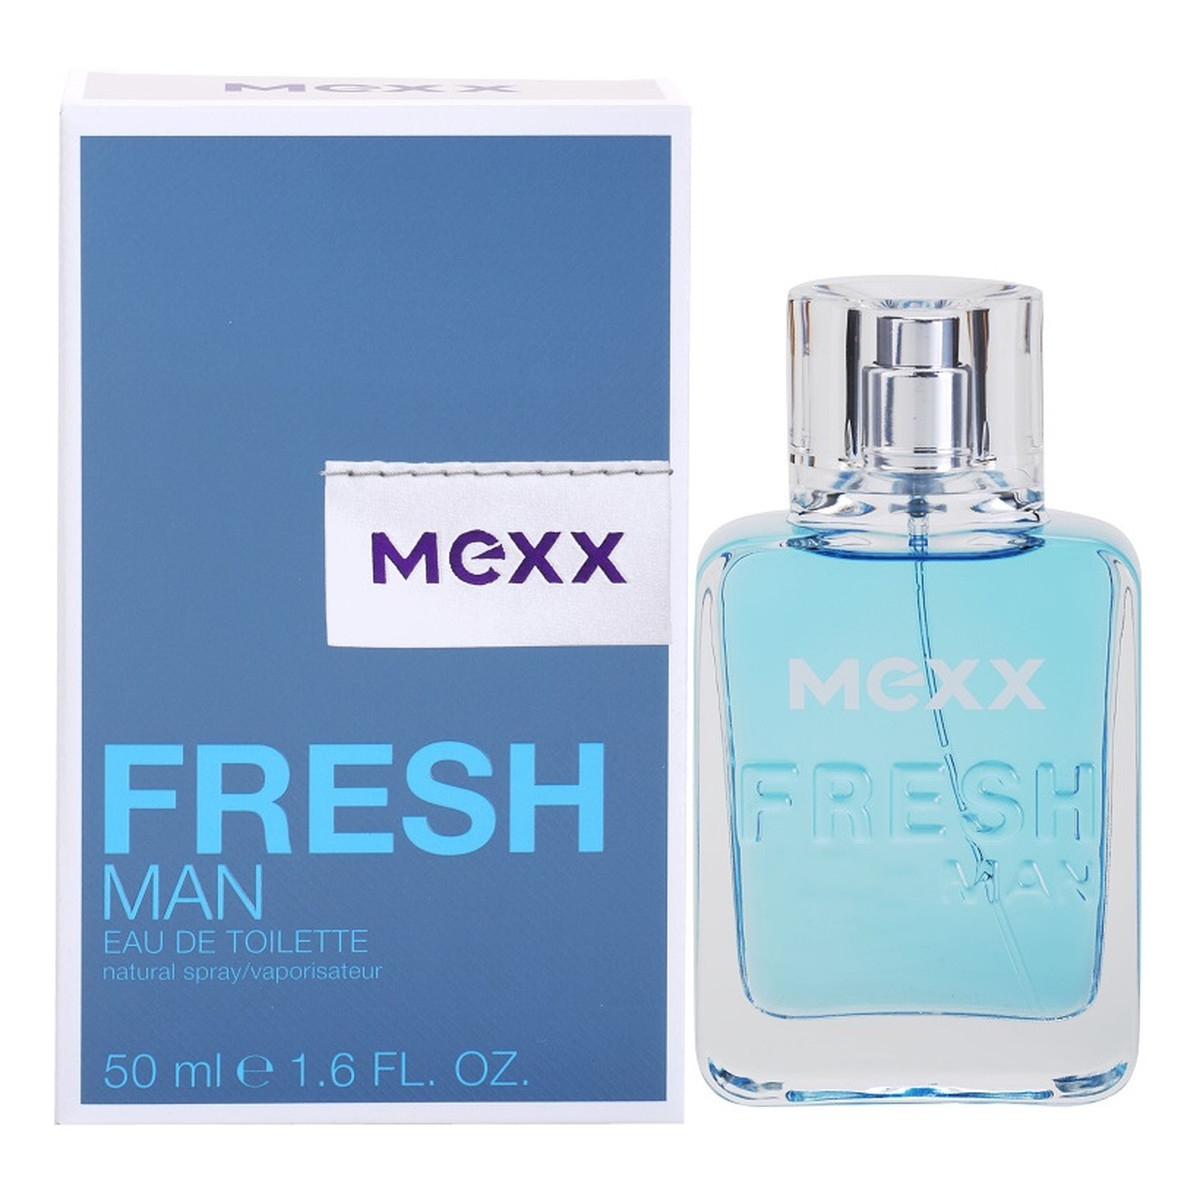 Mexx Fresh Man New Look woda toaletowa dla mężczyzn 50ml